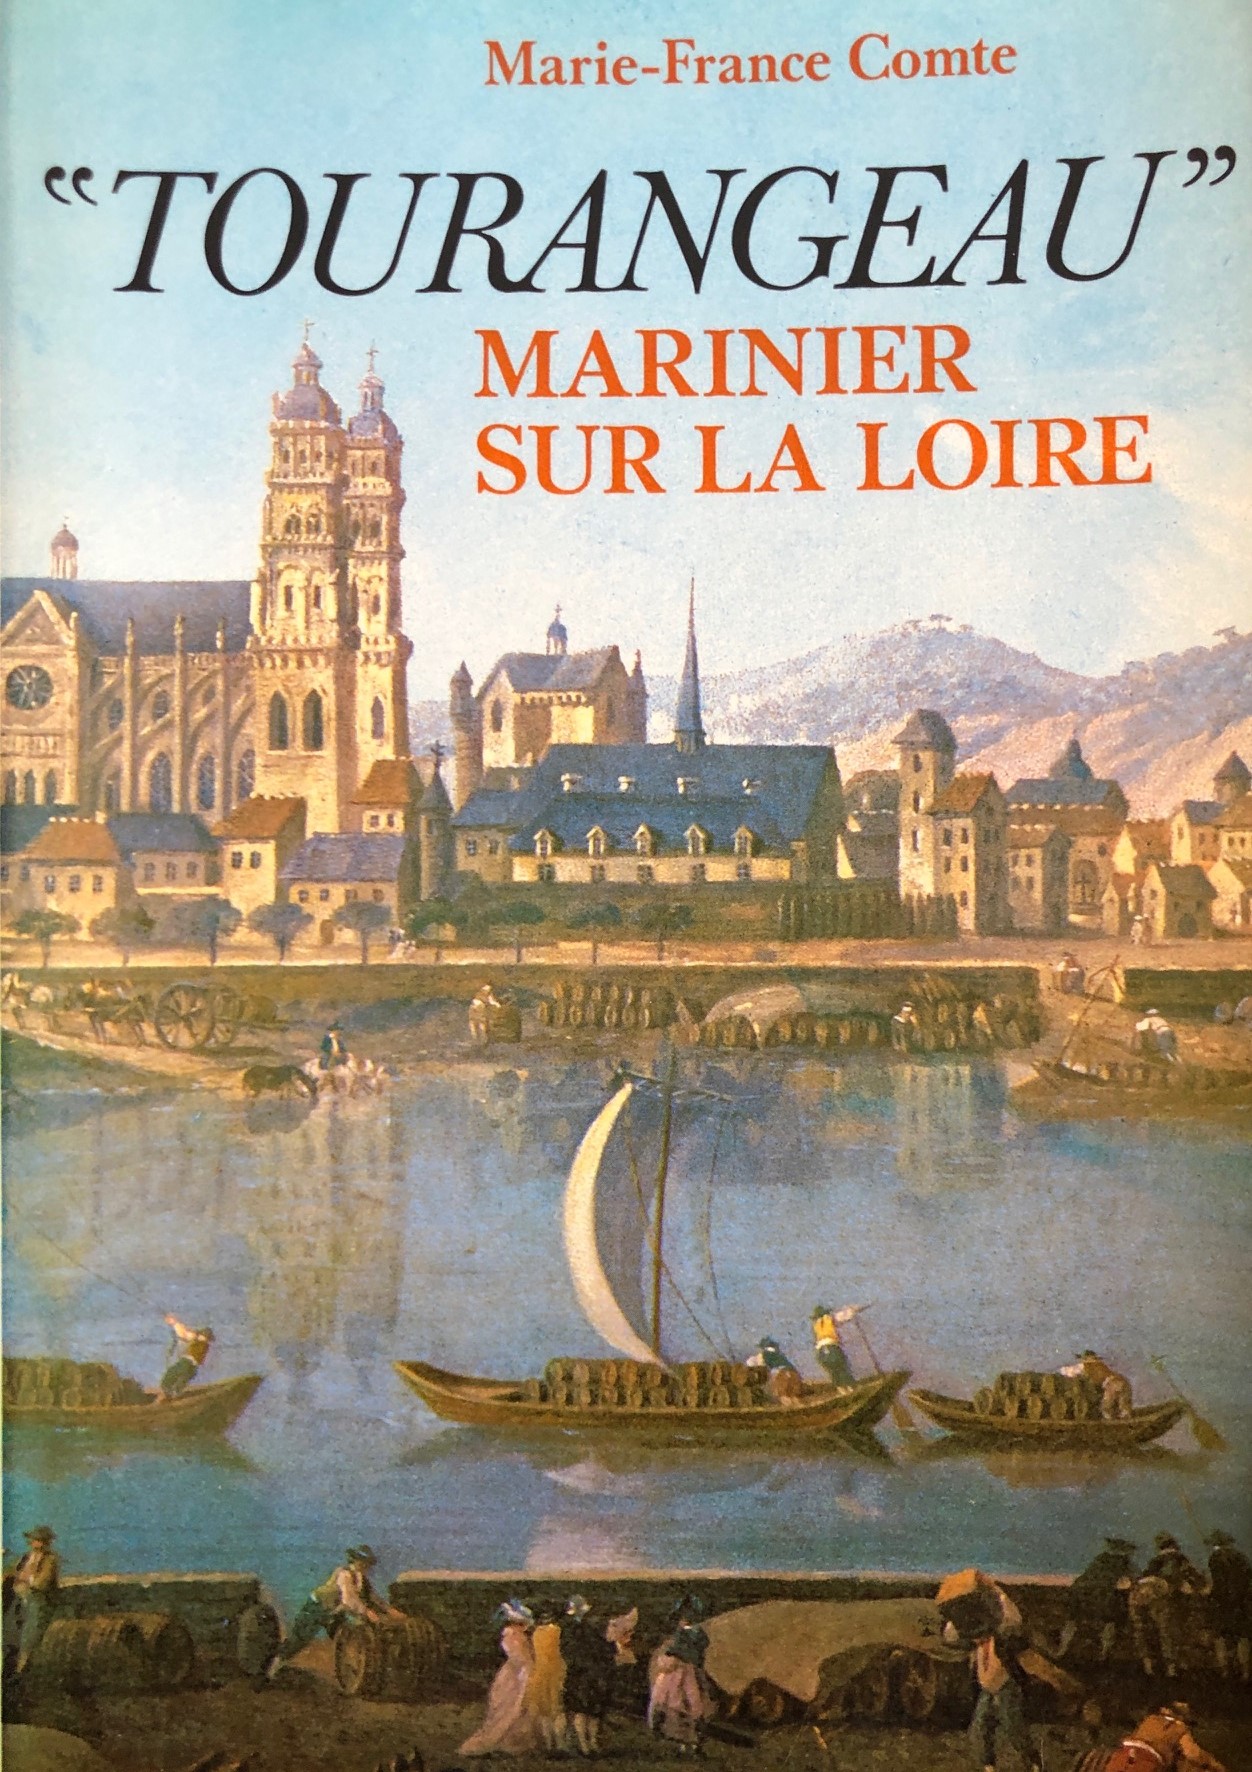 COMTE - Tourangeau marinier sur la Loire IMG_1380